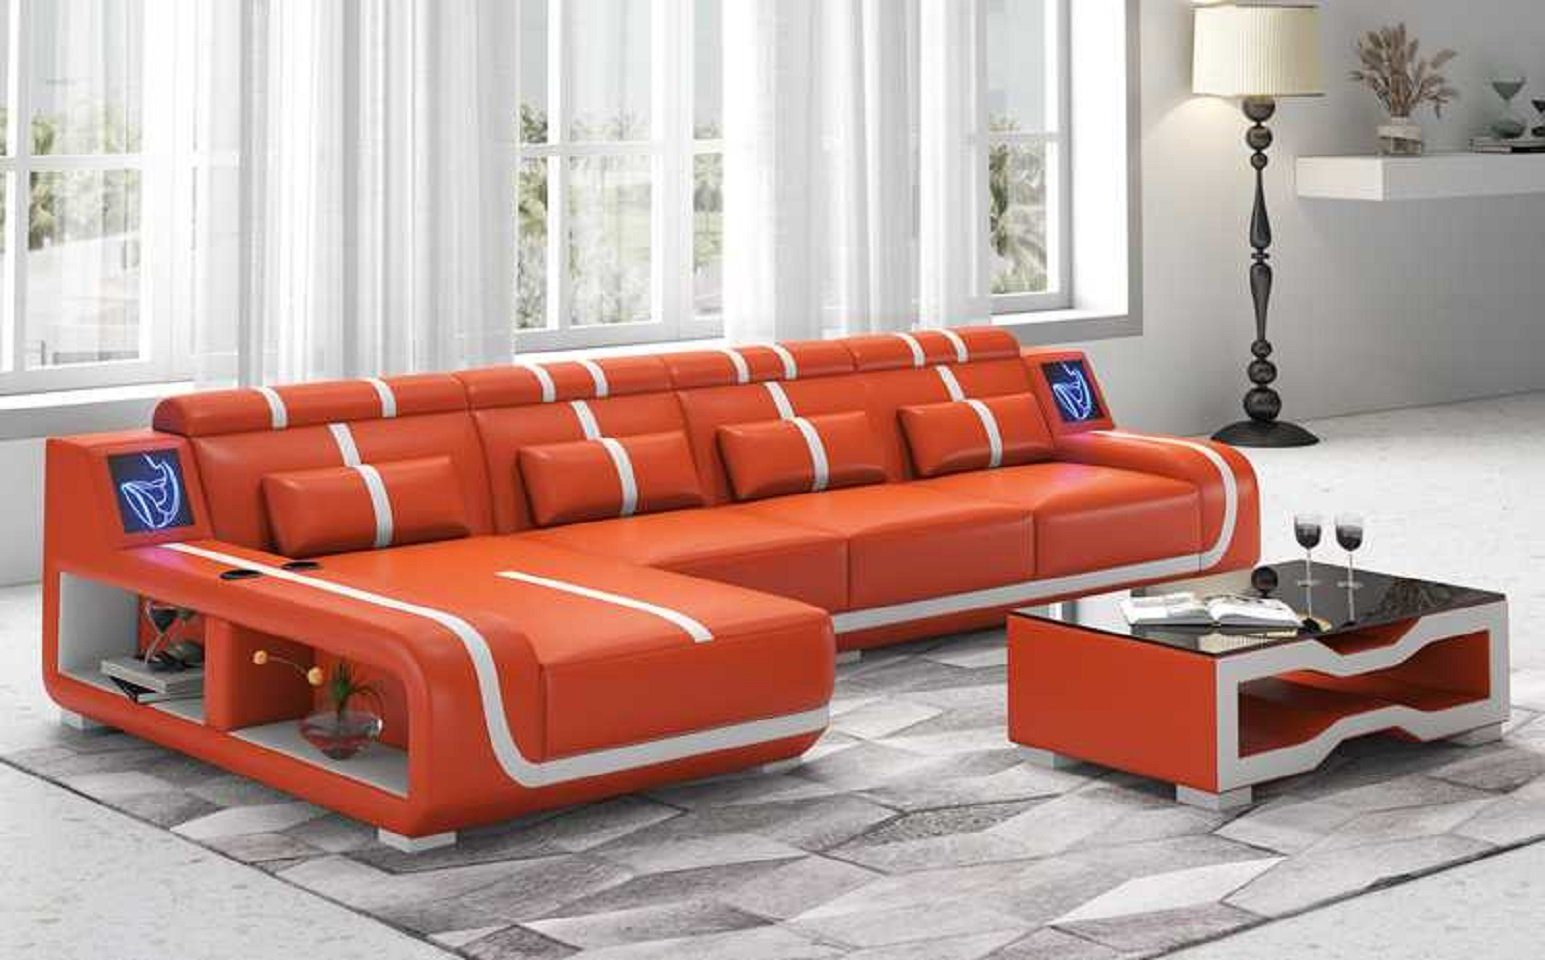 JVmoebel Ecksofa Design Ecksofa Couch L Form Liege Modern Sofa couchen, 3 Teile, Made in Europe Orange | Ecksofas